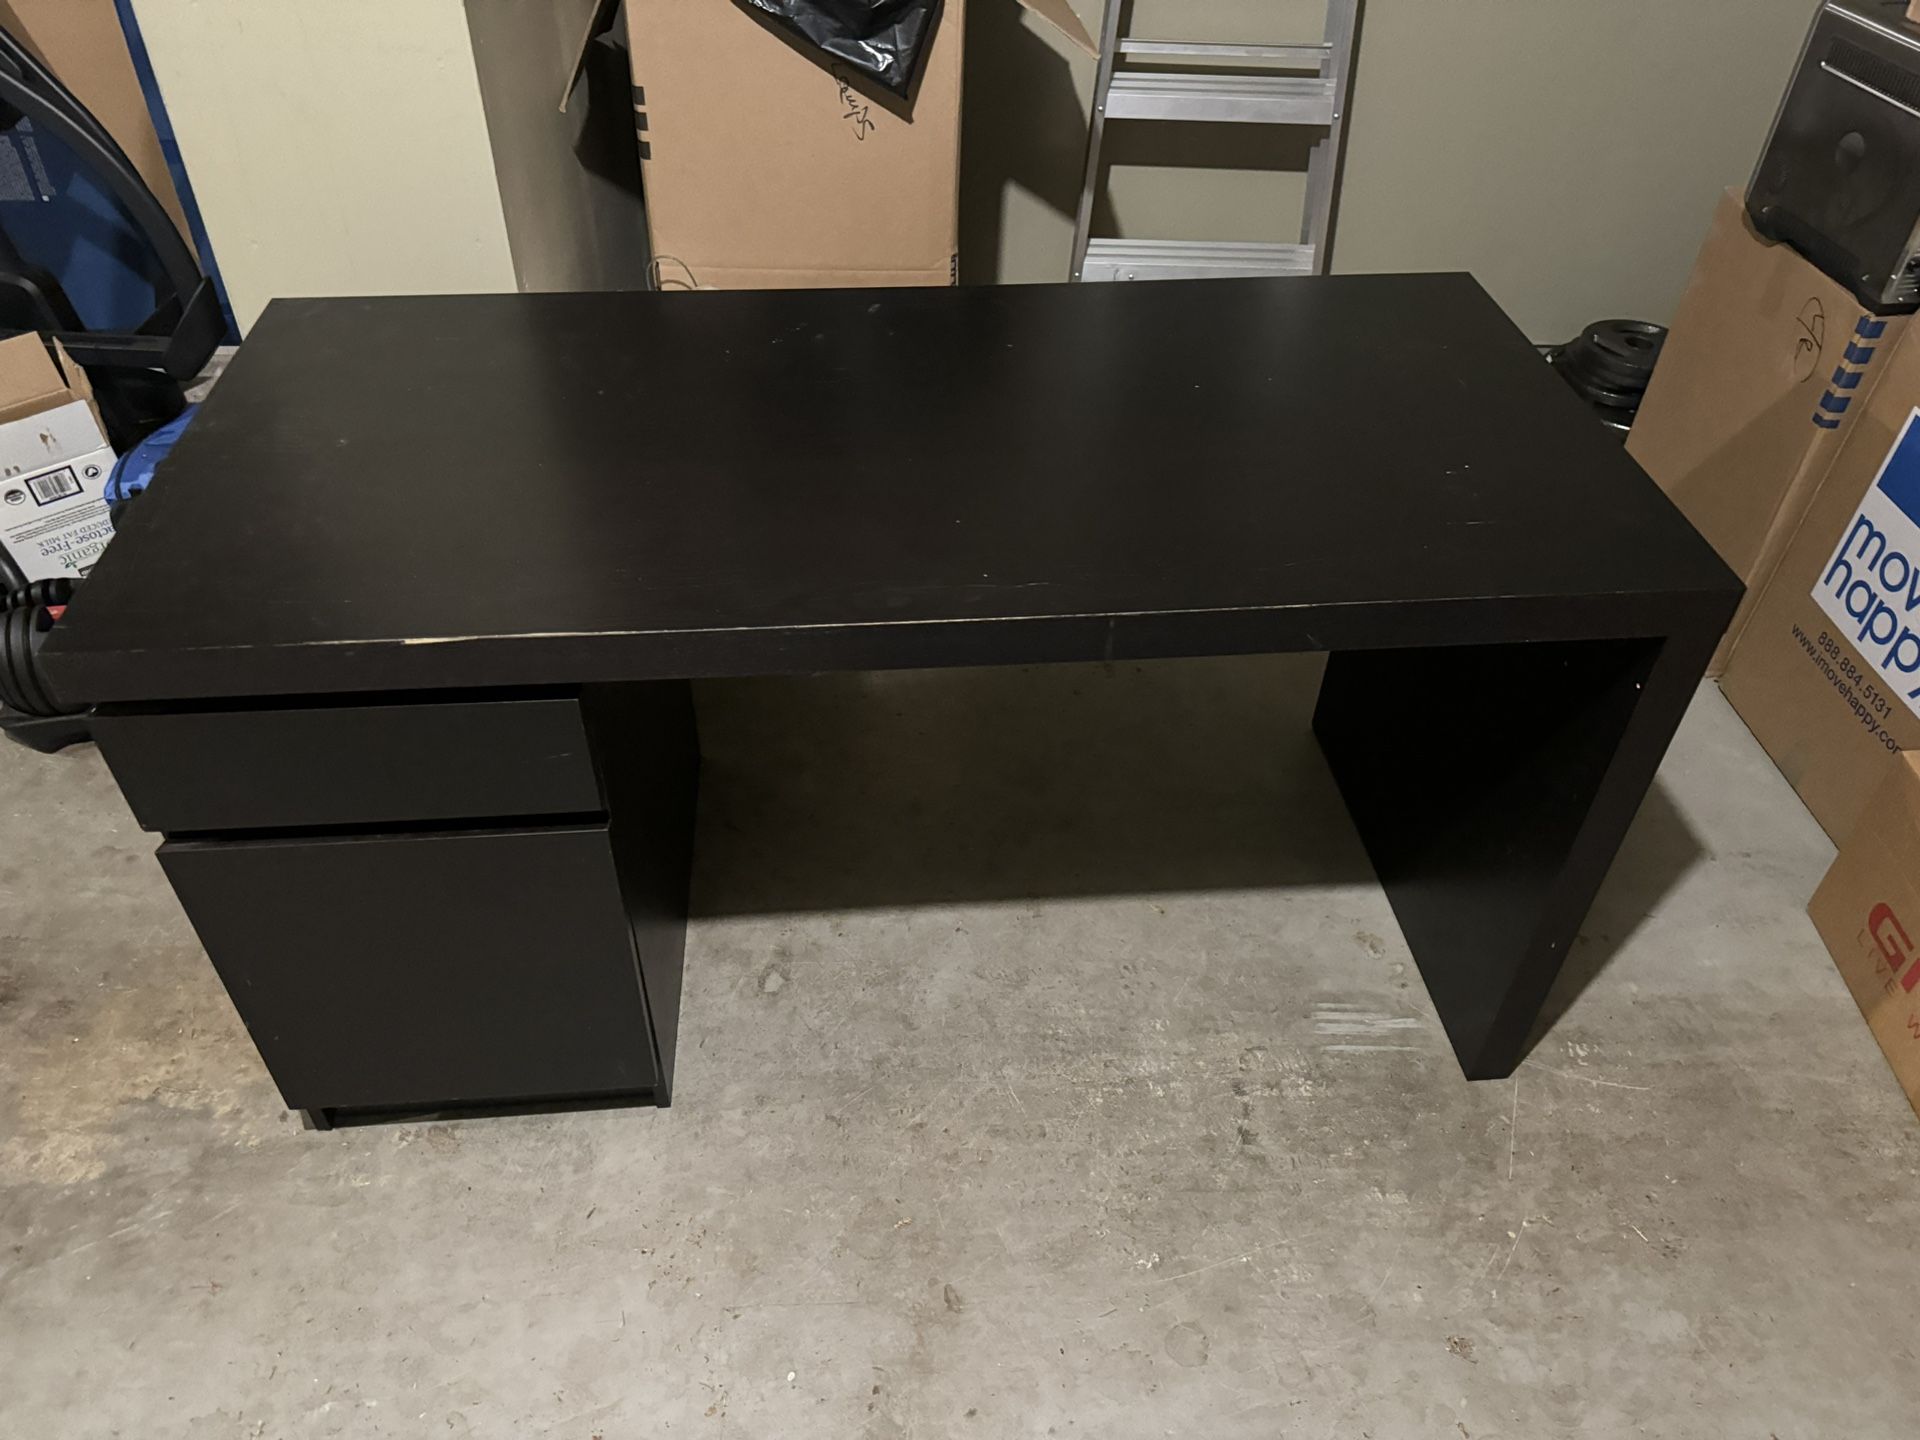 IKEA Desk ($25)